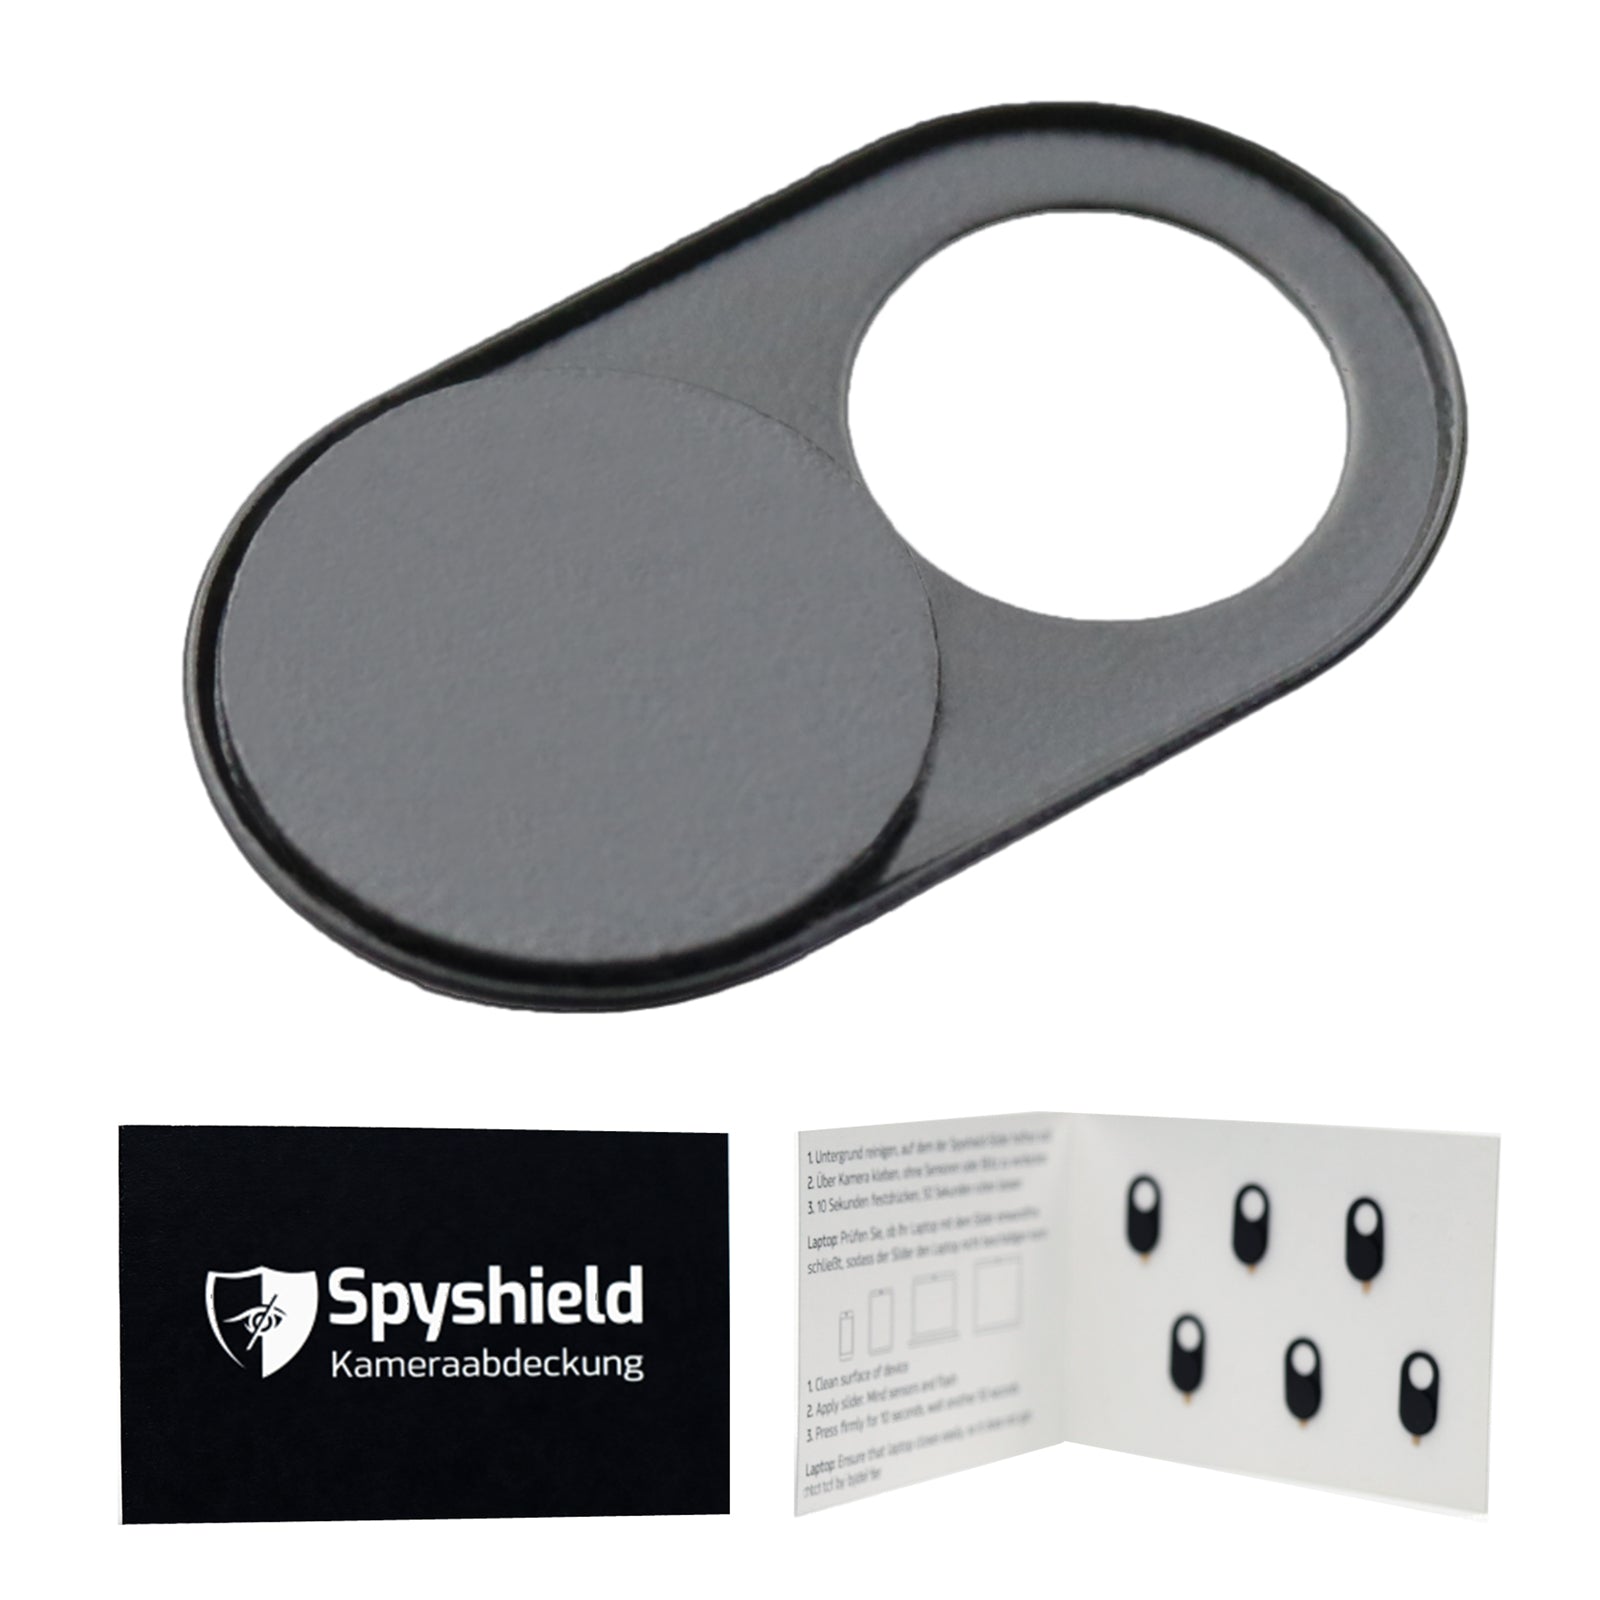 Spyshield Kamera-Abdeckung / Webcam Cover – Spionage-Schutz für Smartphone, Tablet und Laptop